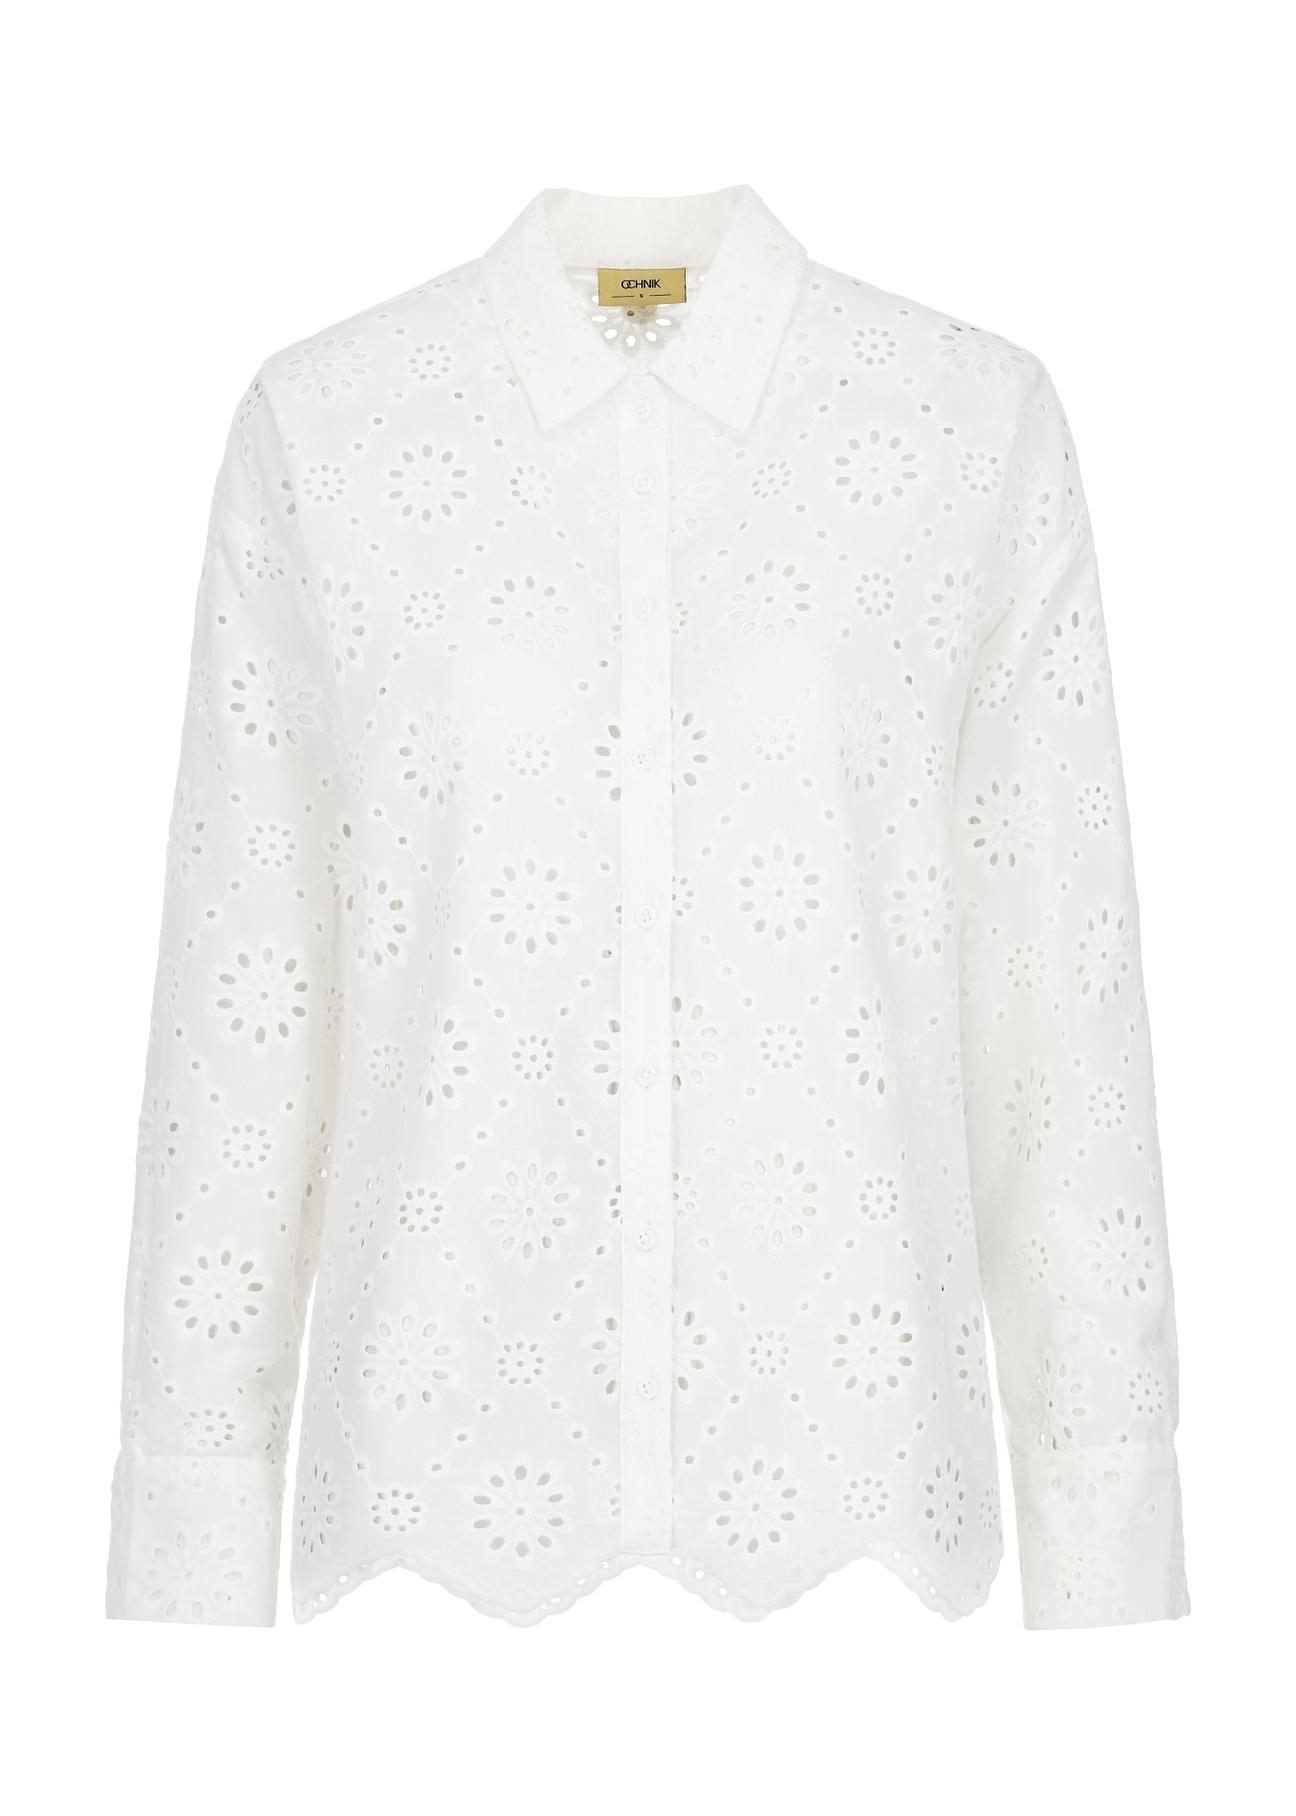 Biała ażurowa koszula damska KOSDT-0152-11(W24)